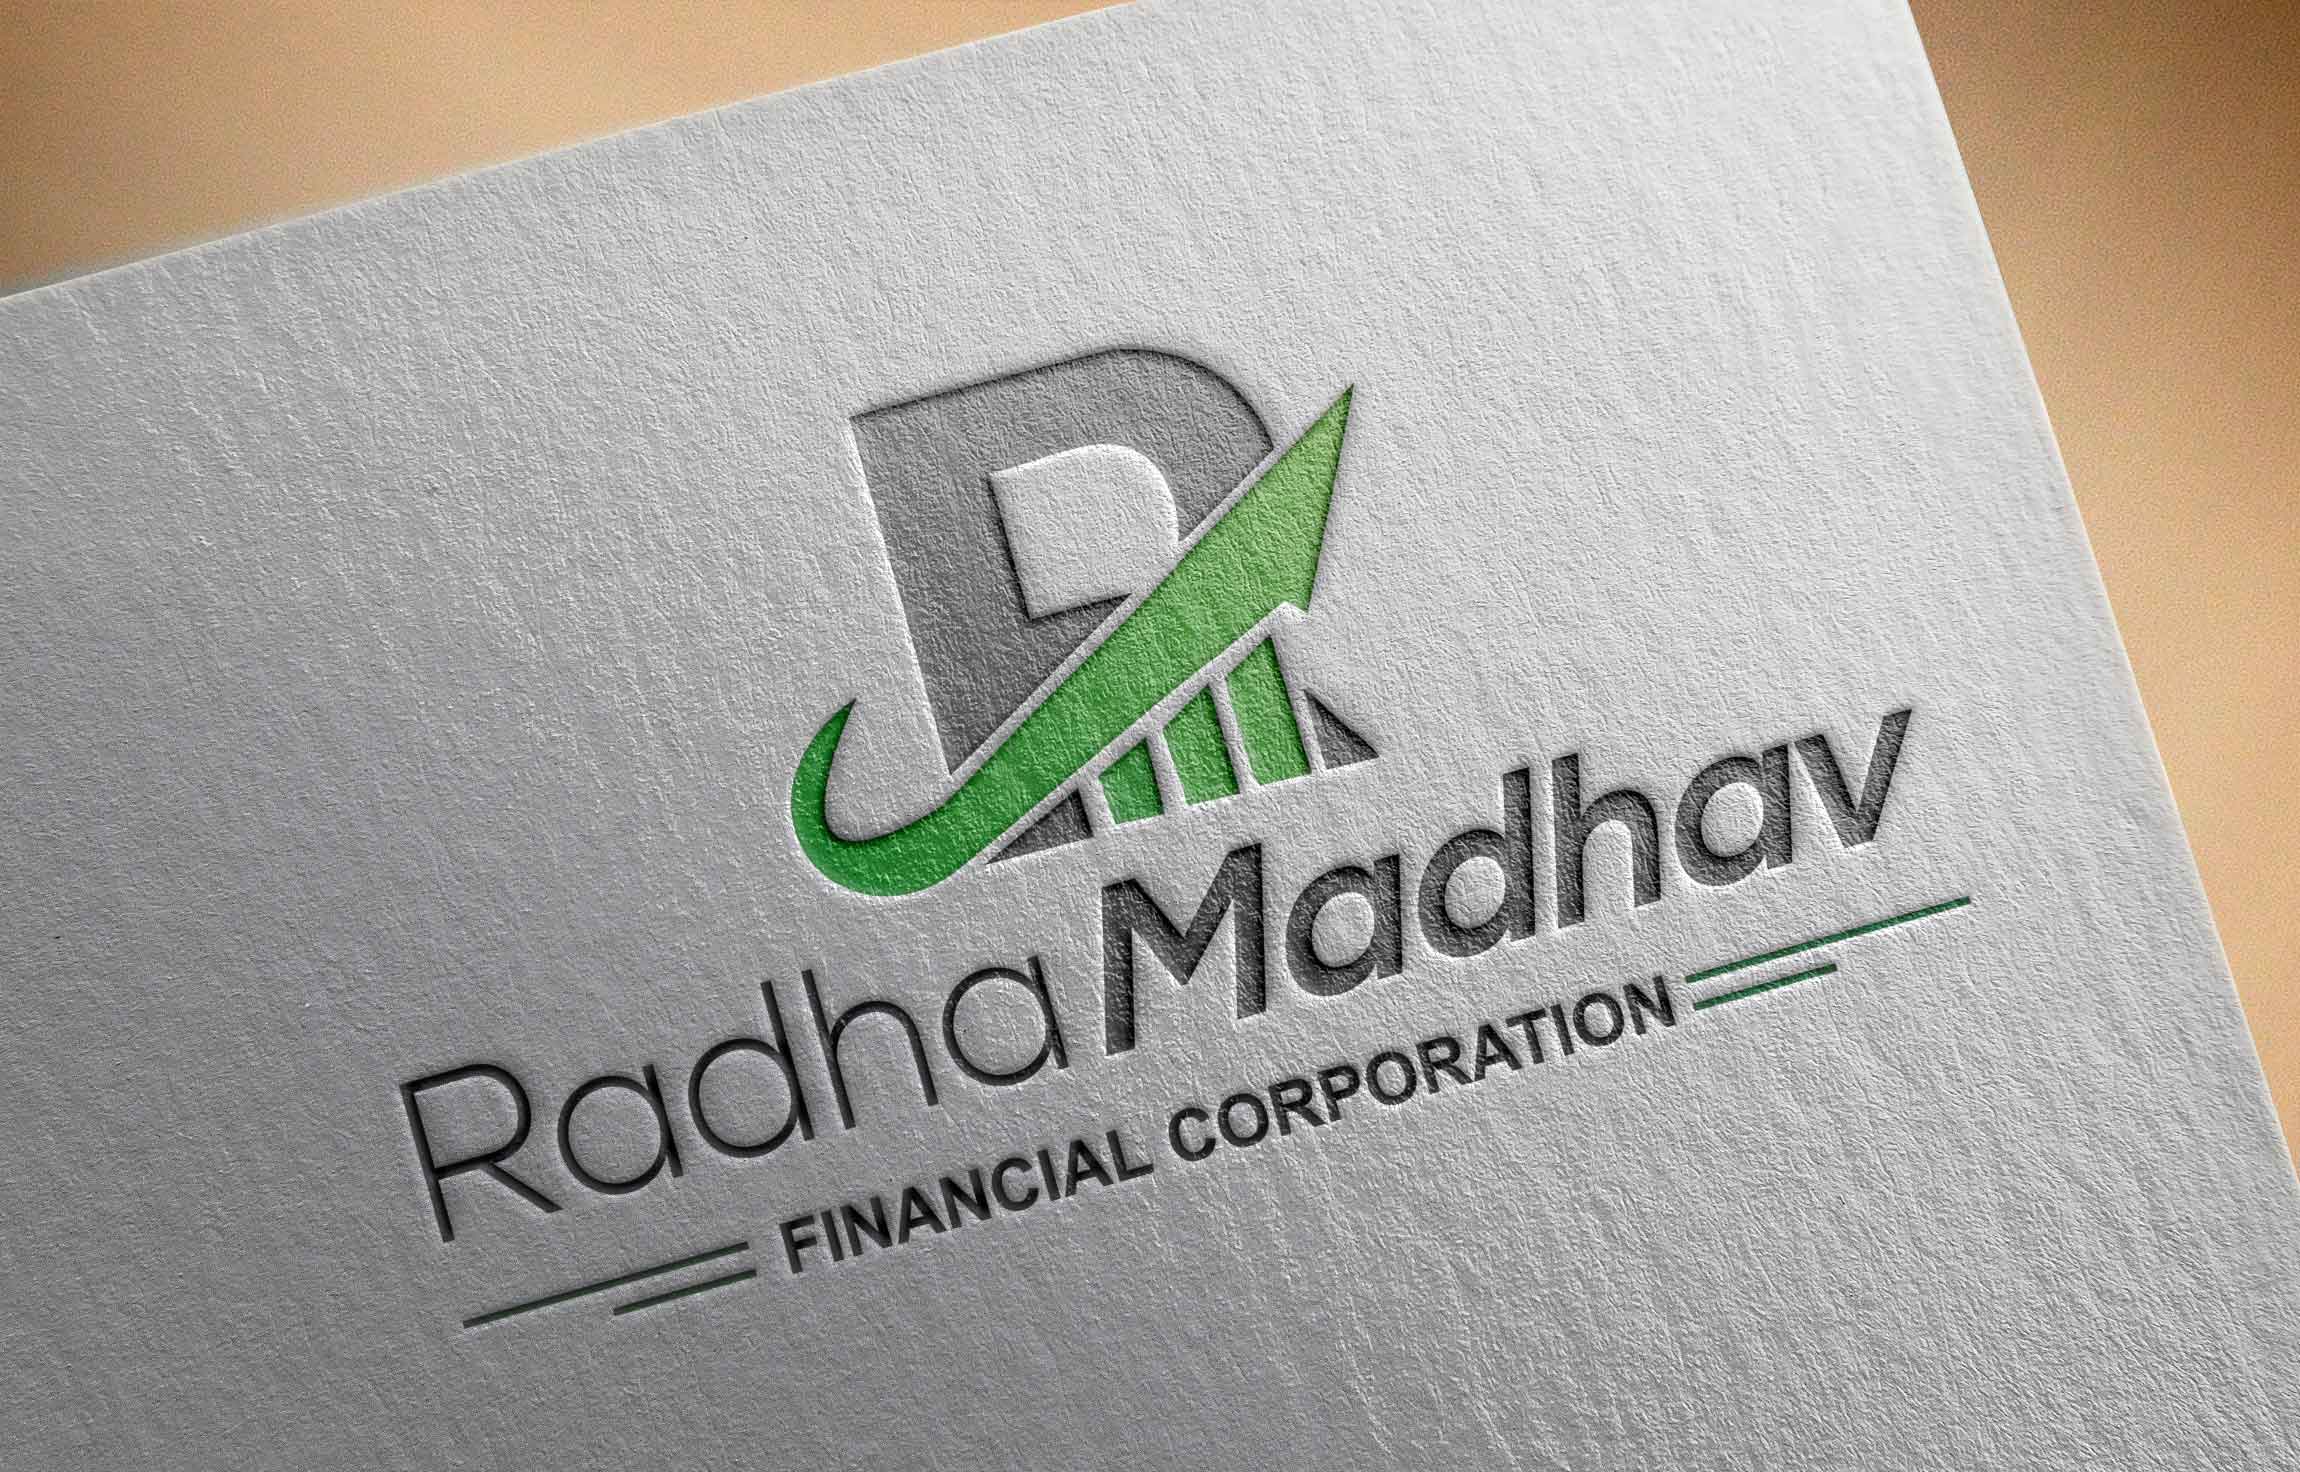 Radha Madhav Fin Corp